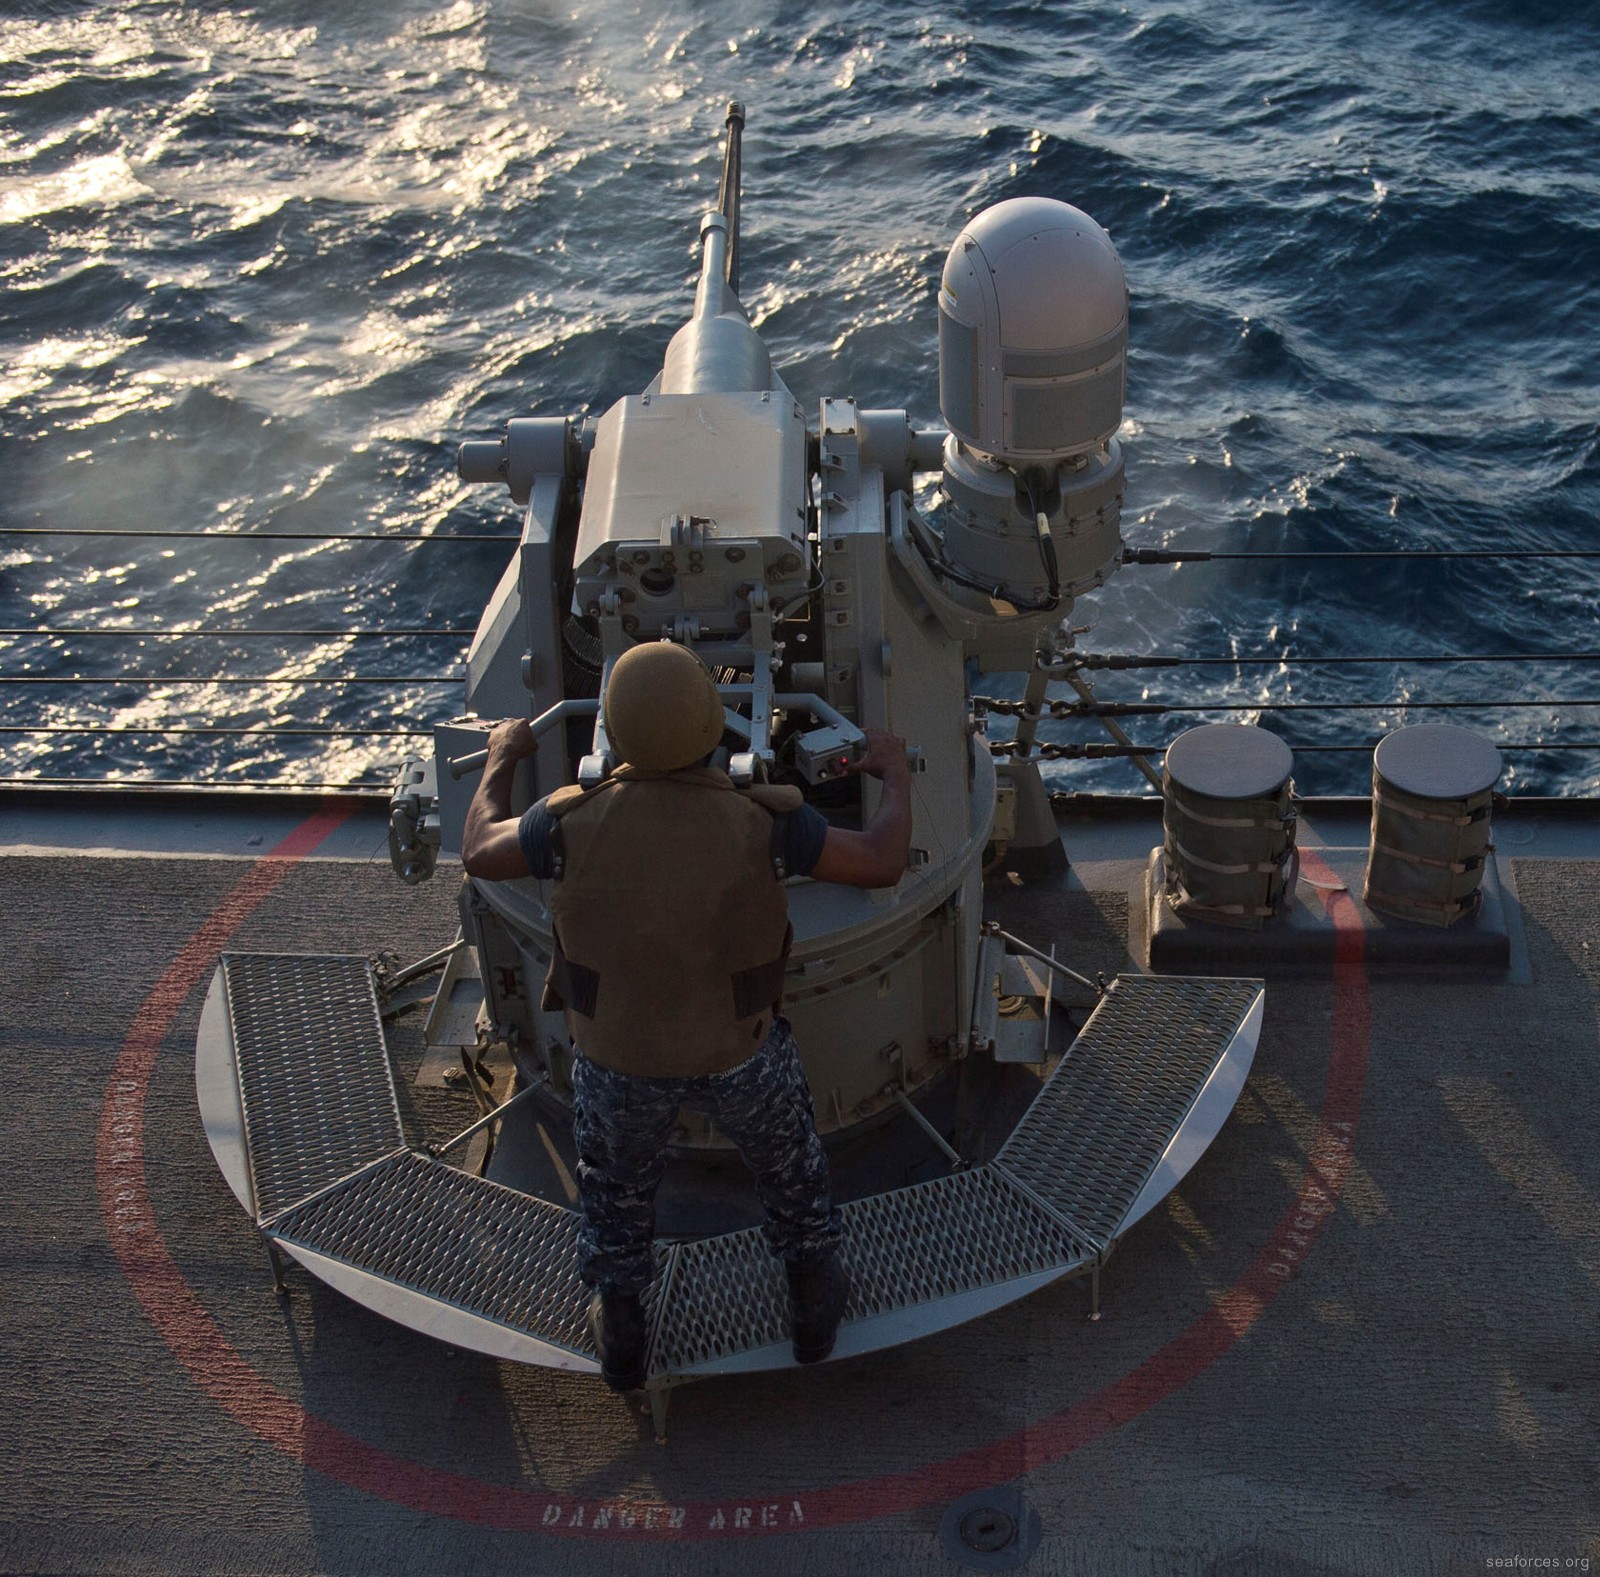 ddg-51 uss arleigh burke destroyer us navy 24 mk-38 mod.2 machine gun system